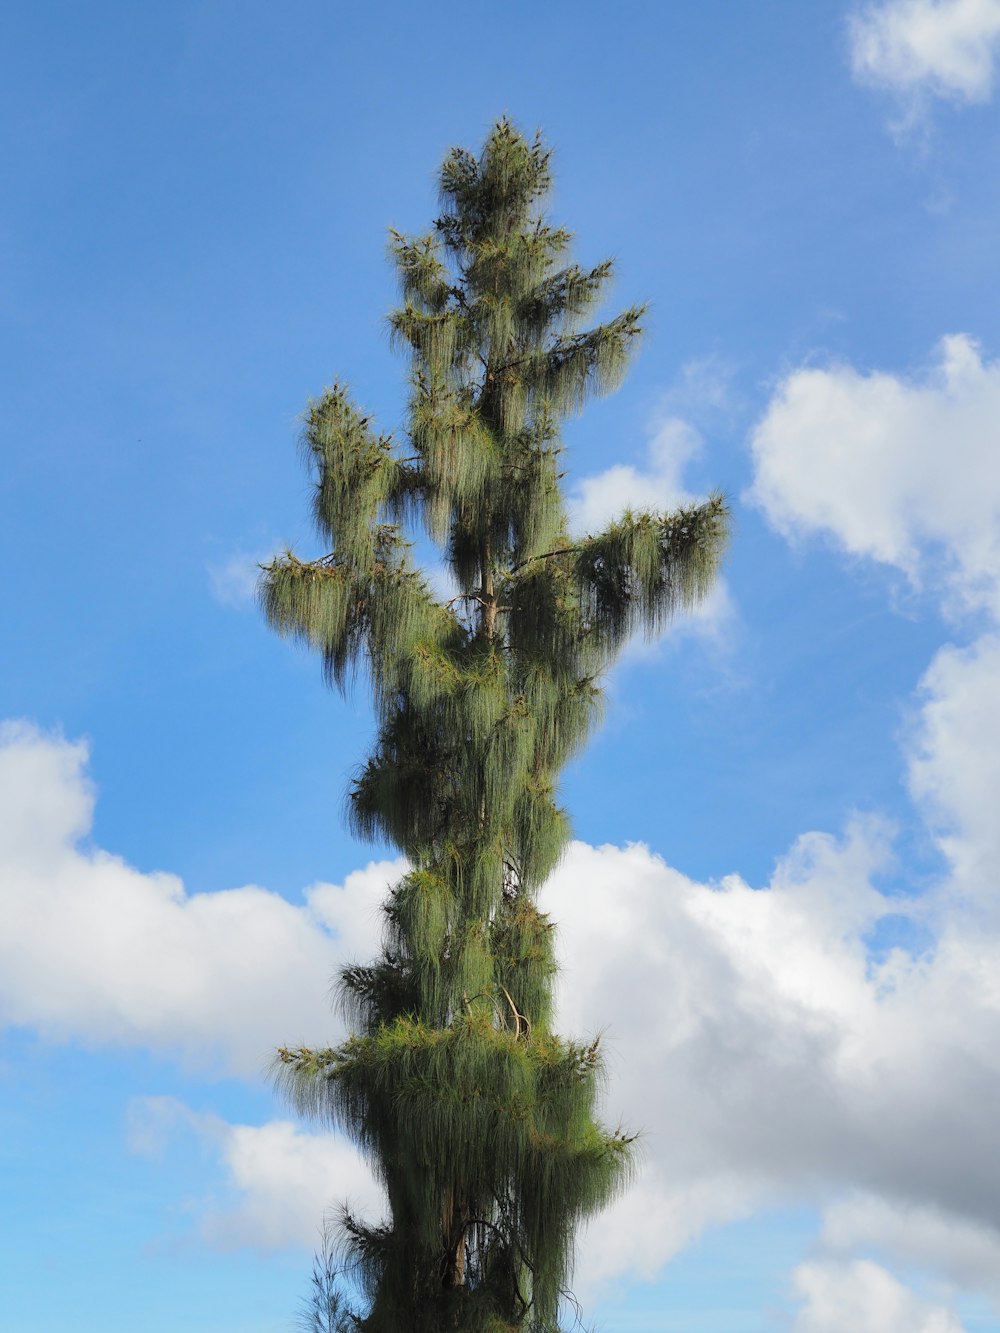 a tall tree with a blue sky